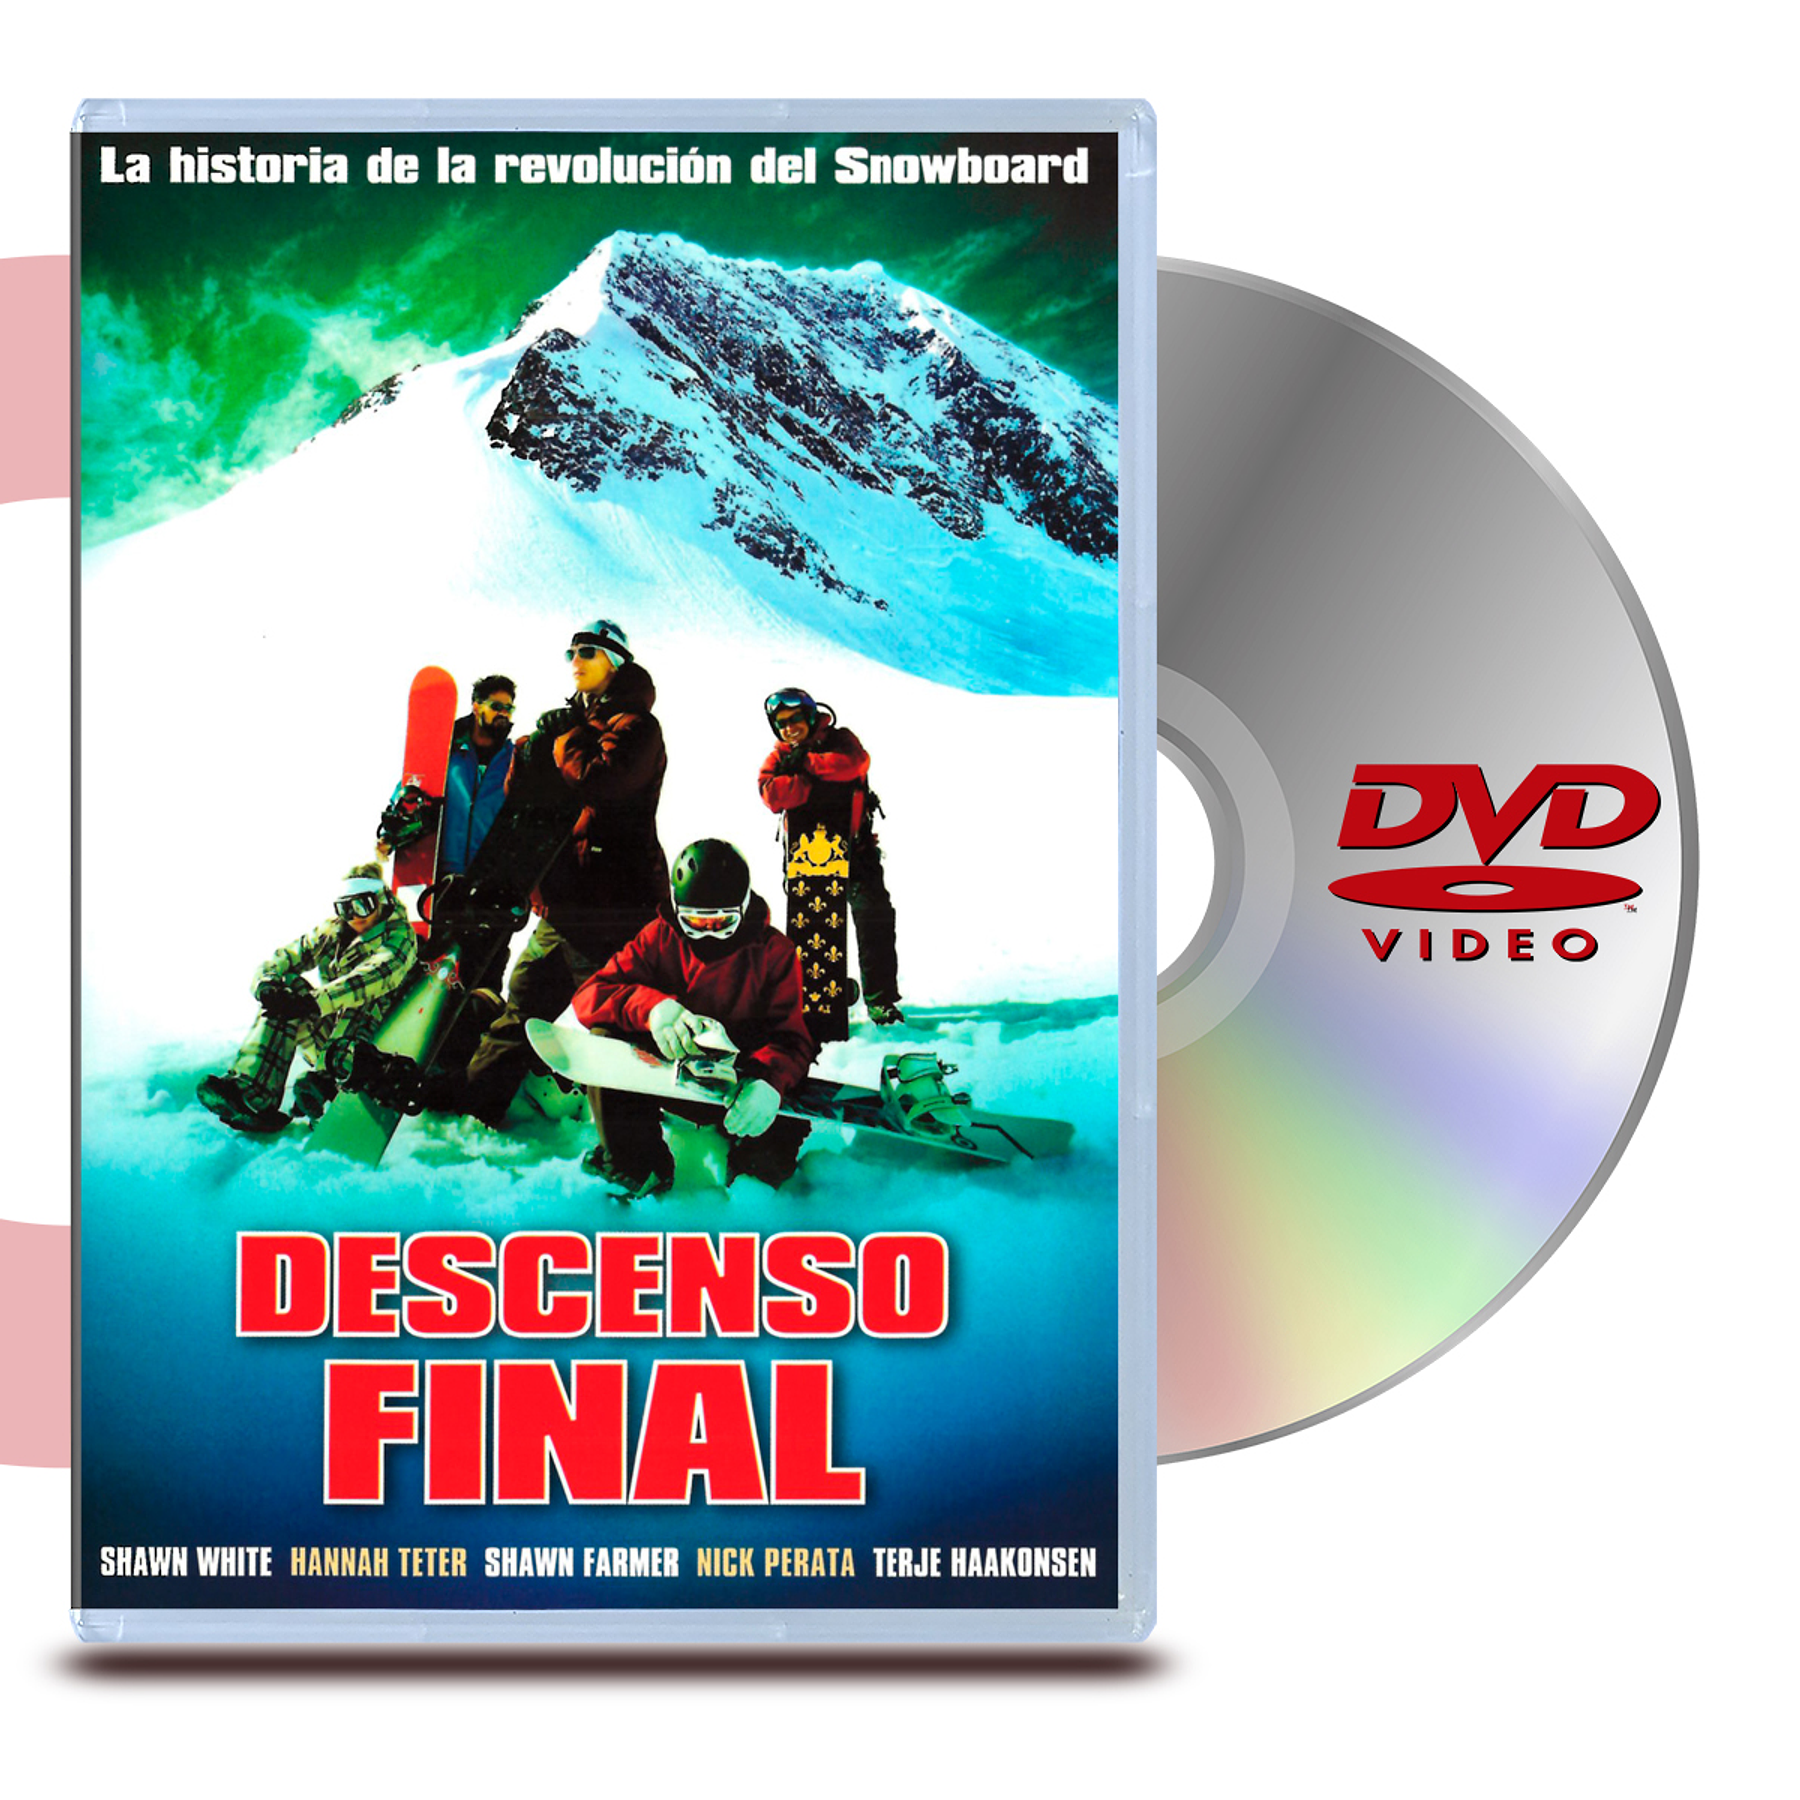 DVD DESCENSO FINAL (OFERTA)